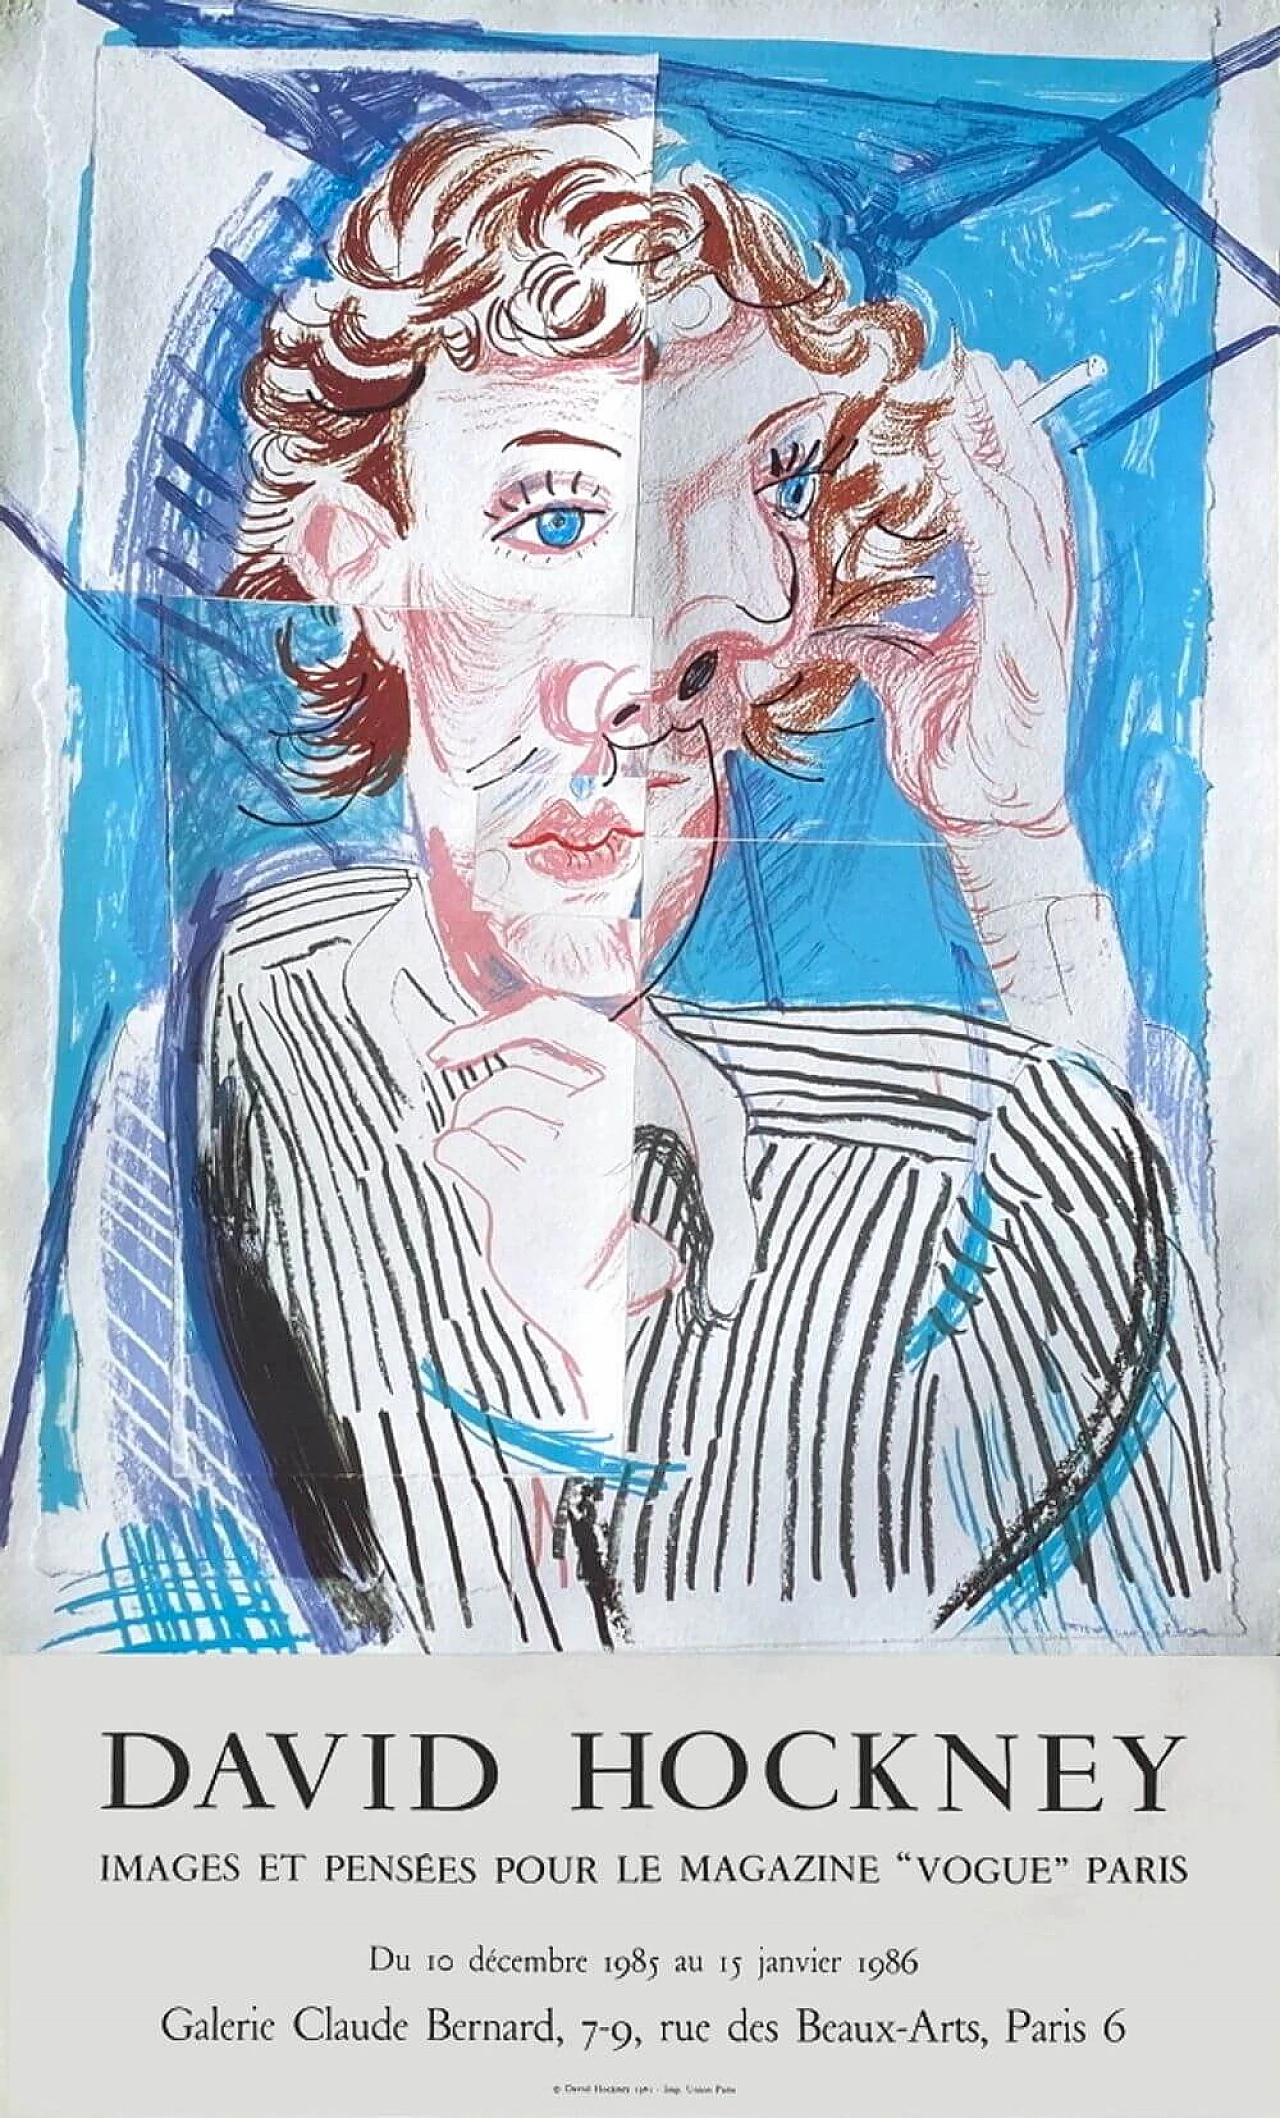 David Hockney Exhibition Poster, 1986 1219445